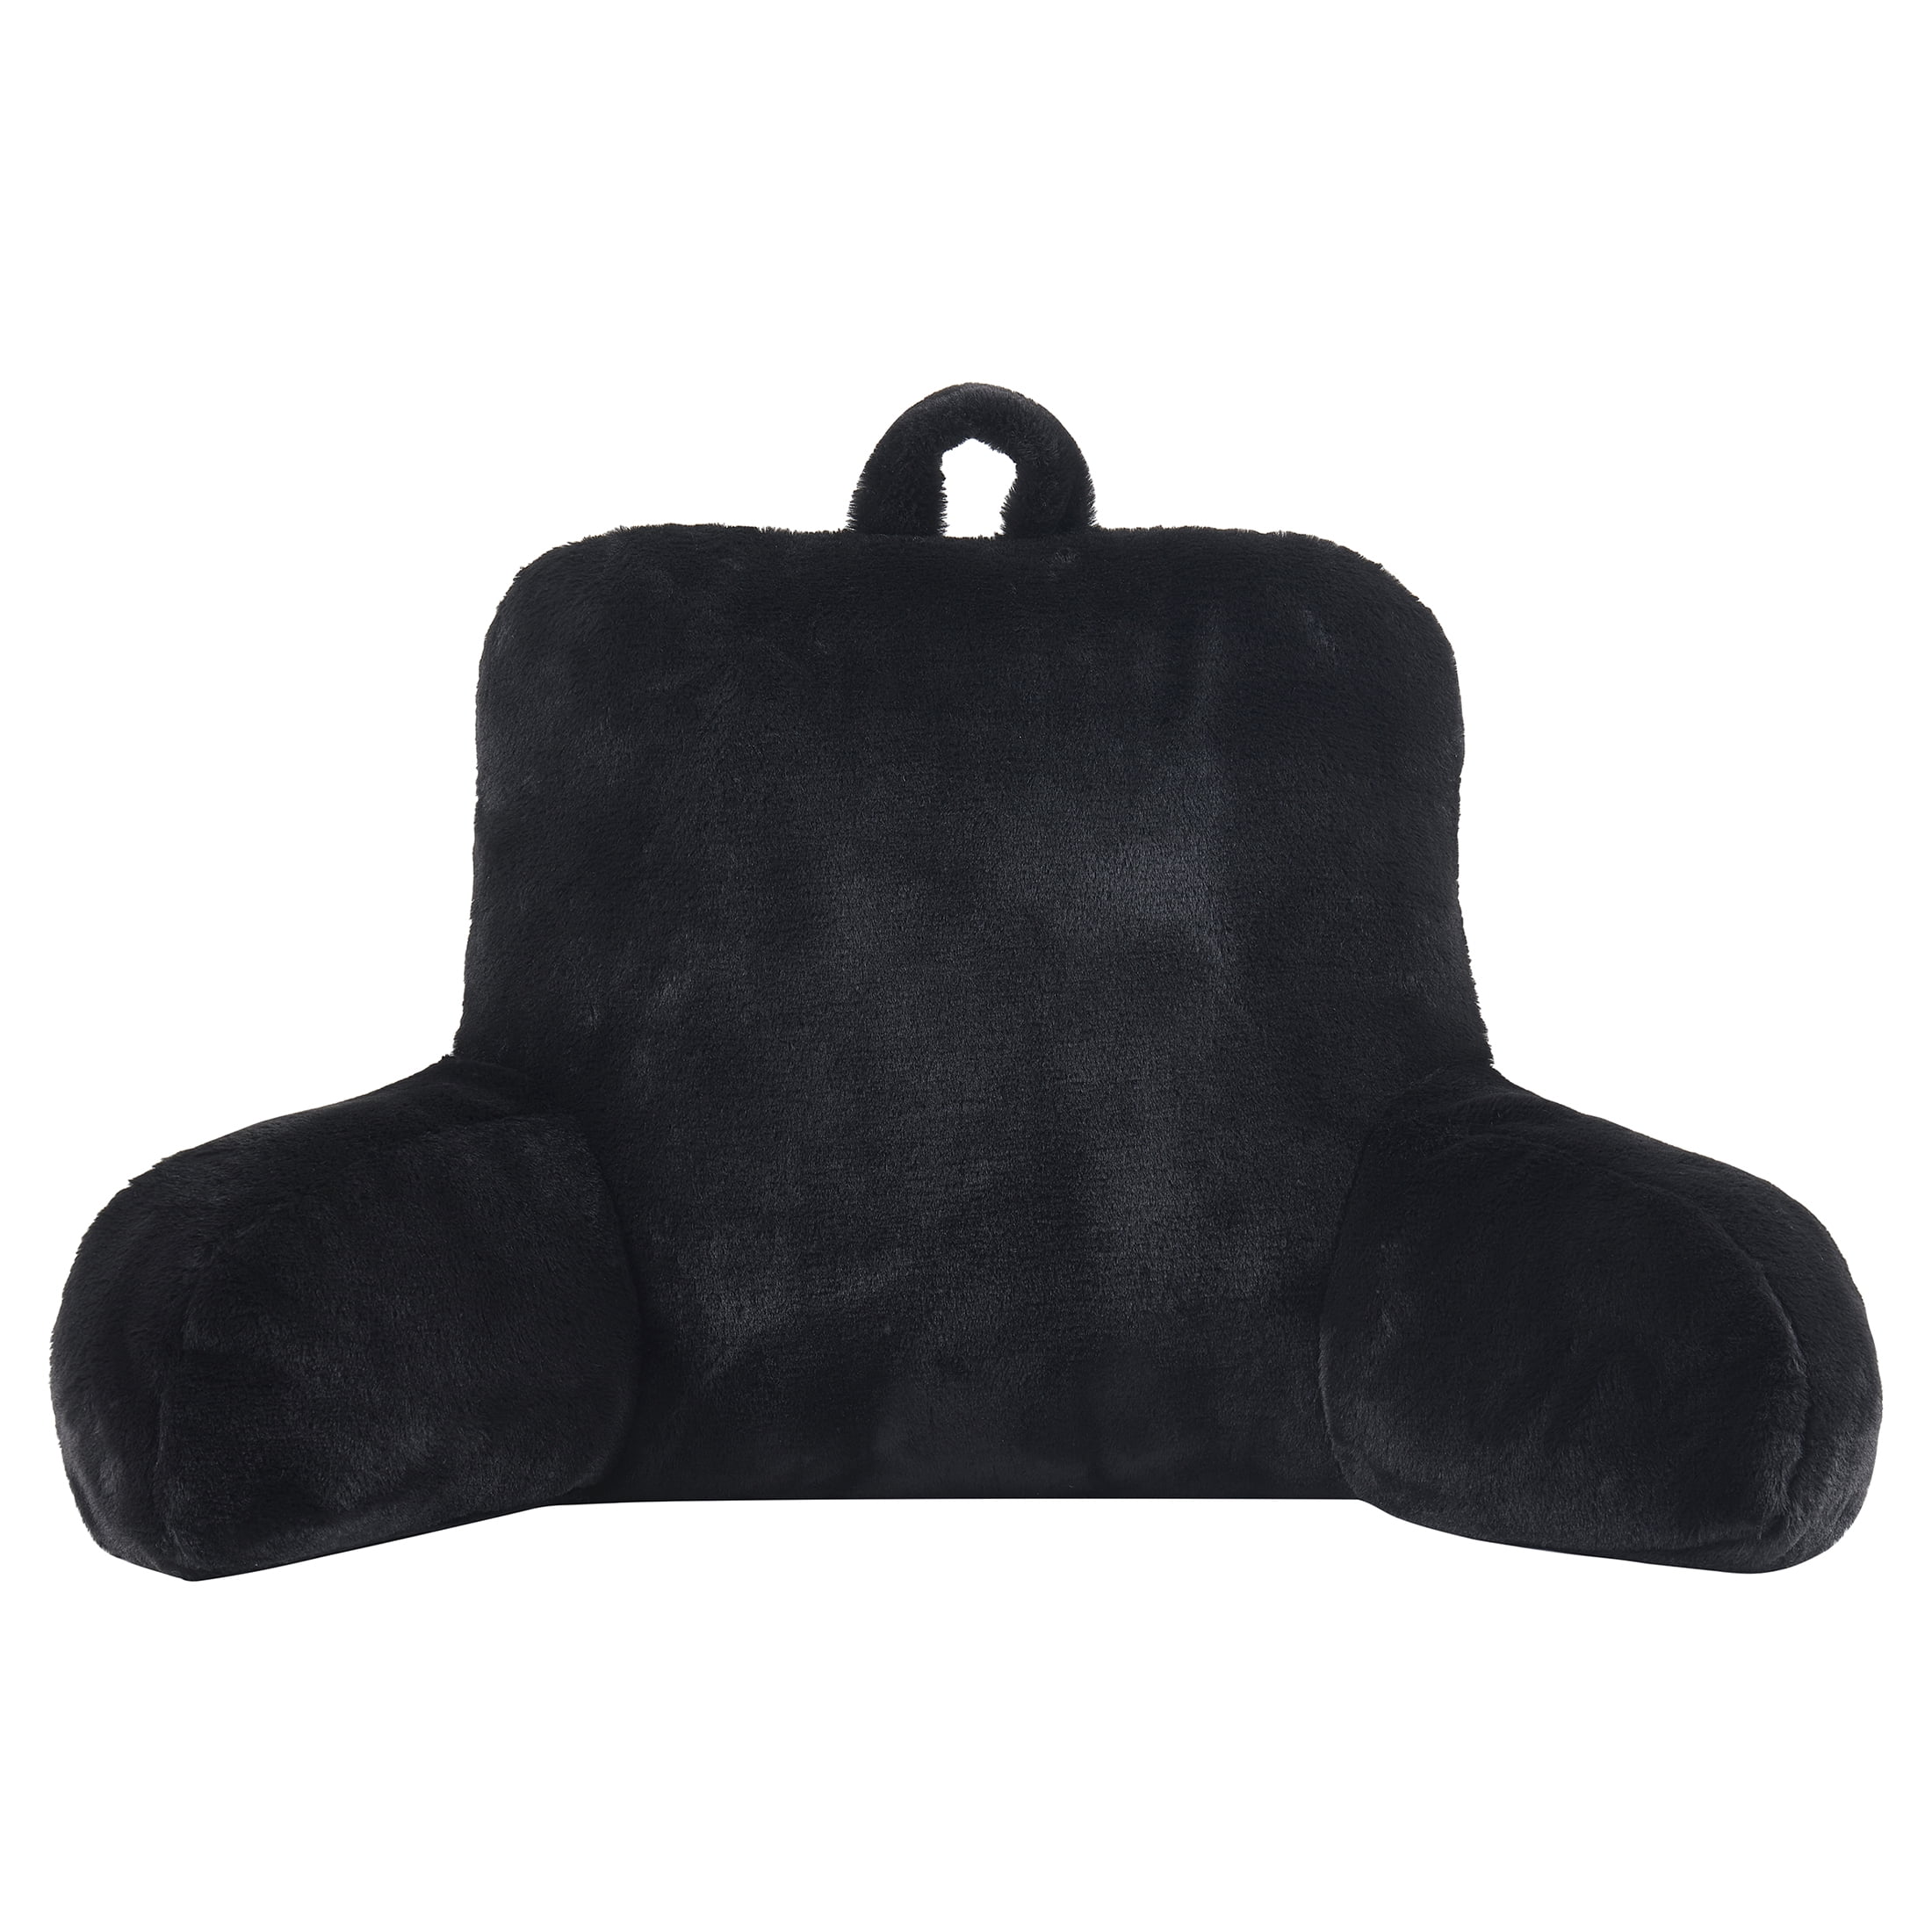 Mainstays Faux Fur Plush Bedrest Pillow, Specialty Size, Black, 1 Piece